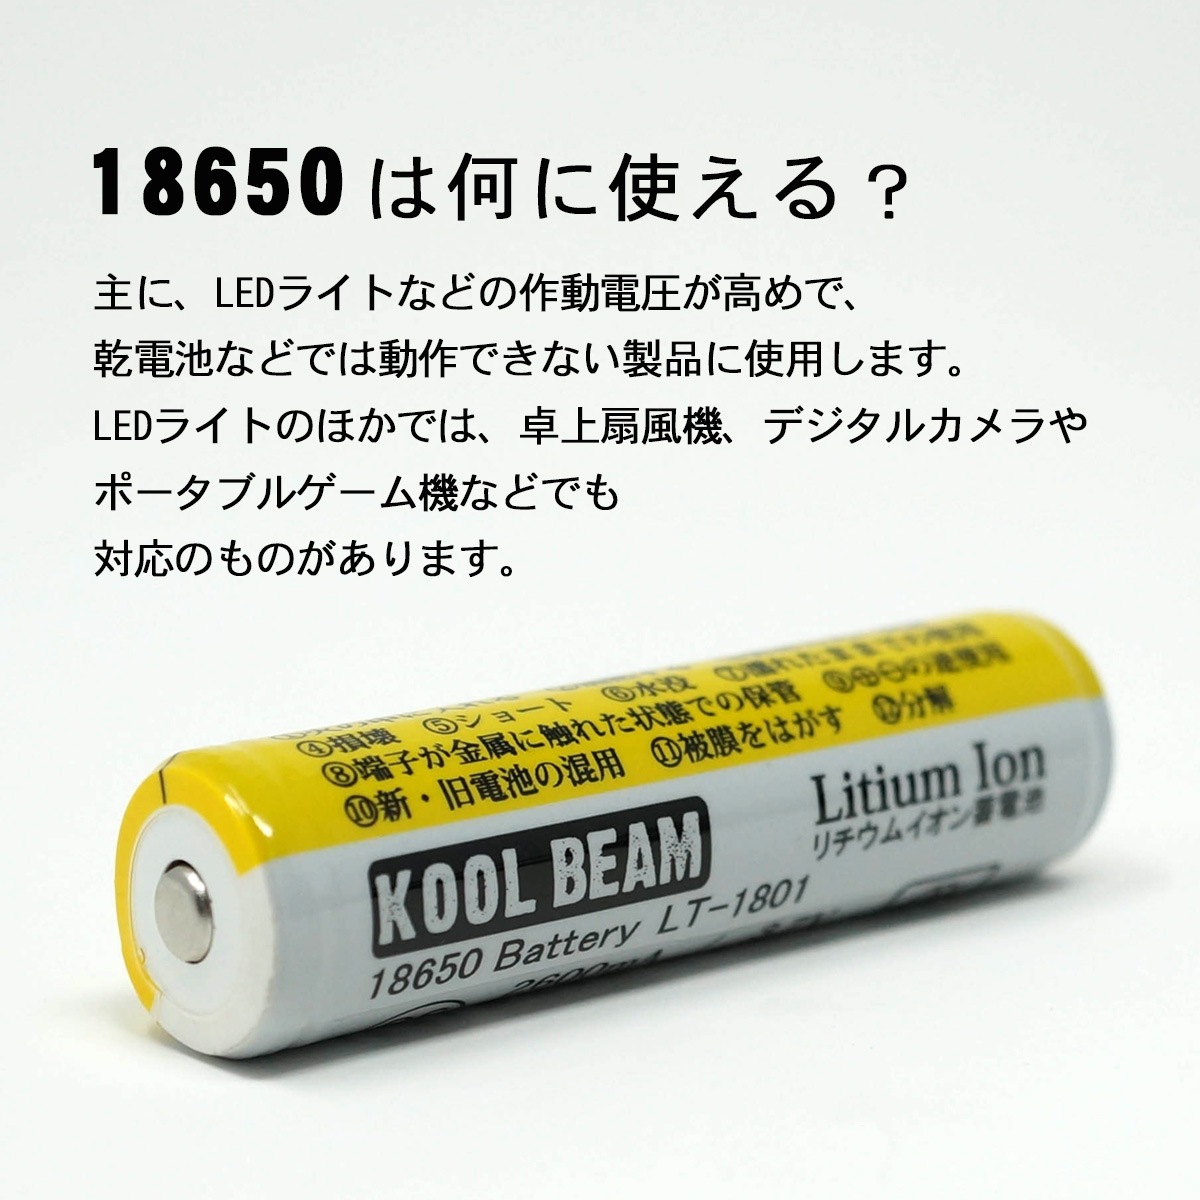 楽天市場 本日ポイント5倍 Koolbeam リチウムイオン電池 2600mah 専用充電器セット Ymt 東京道具商会